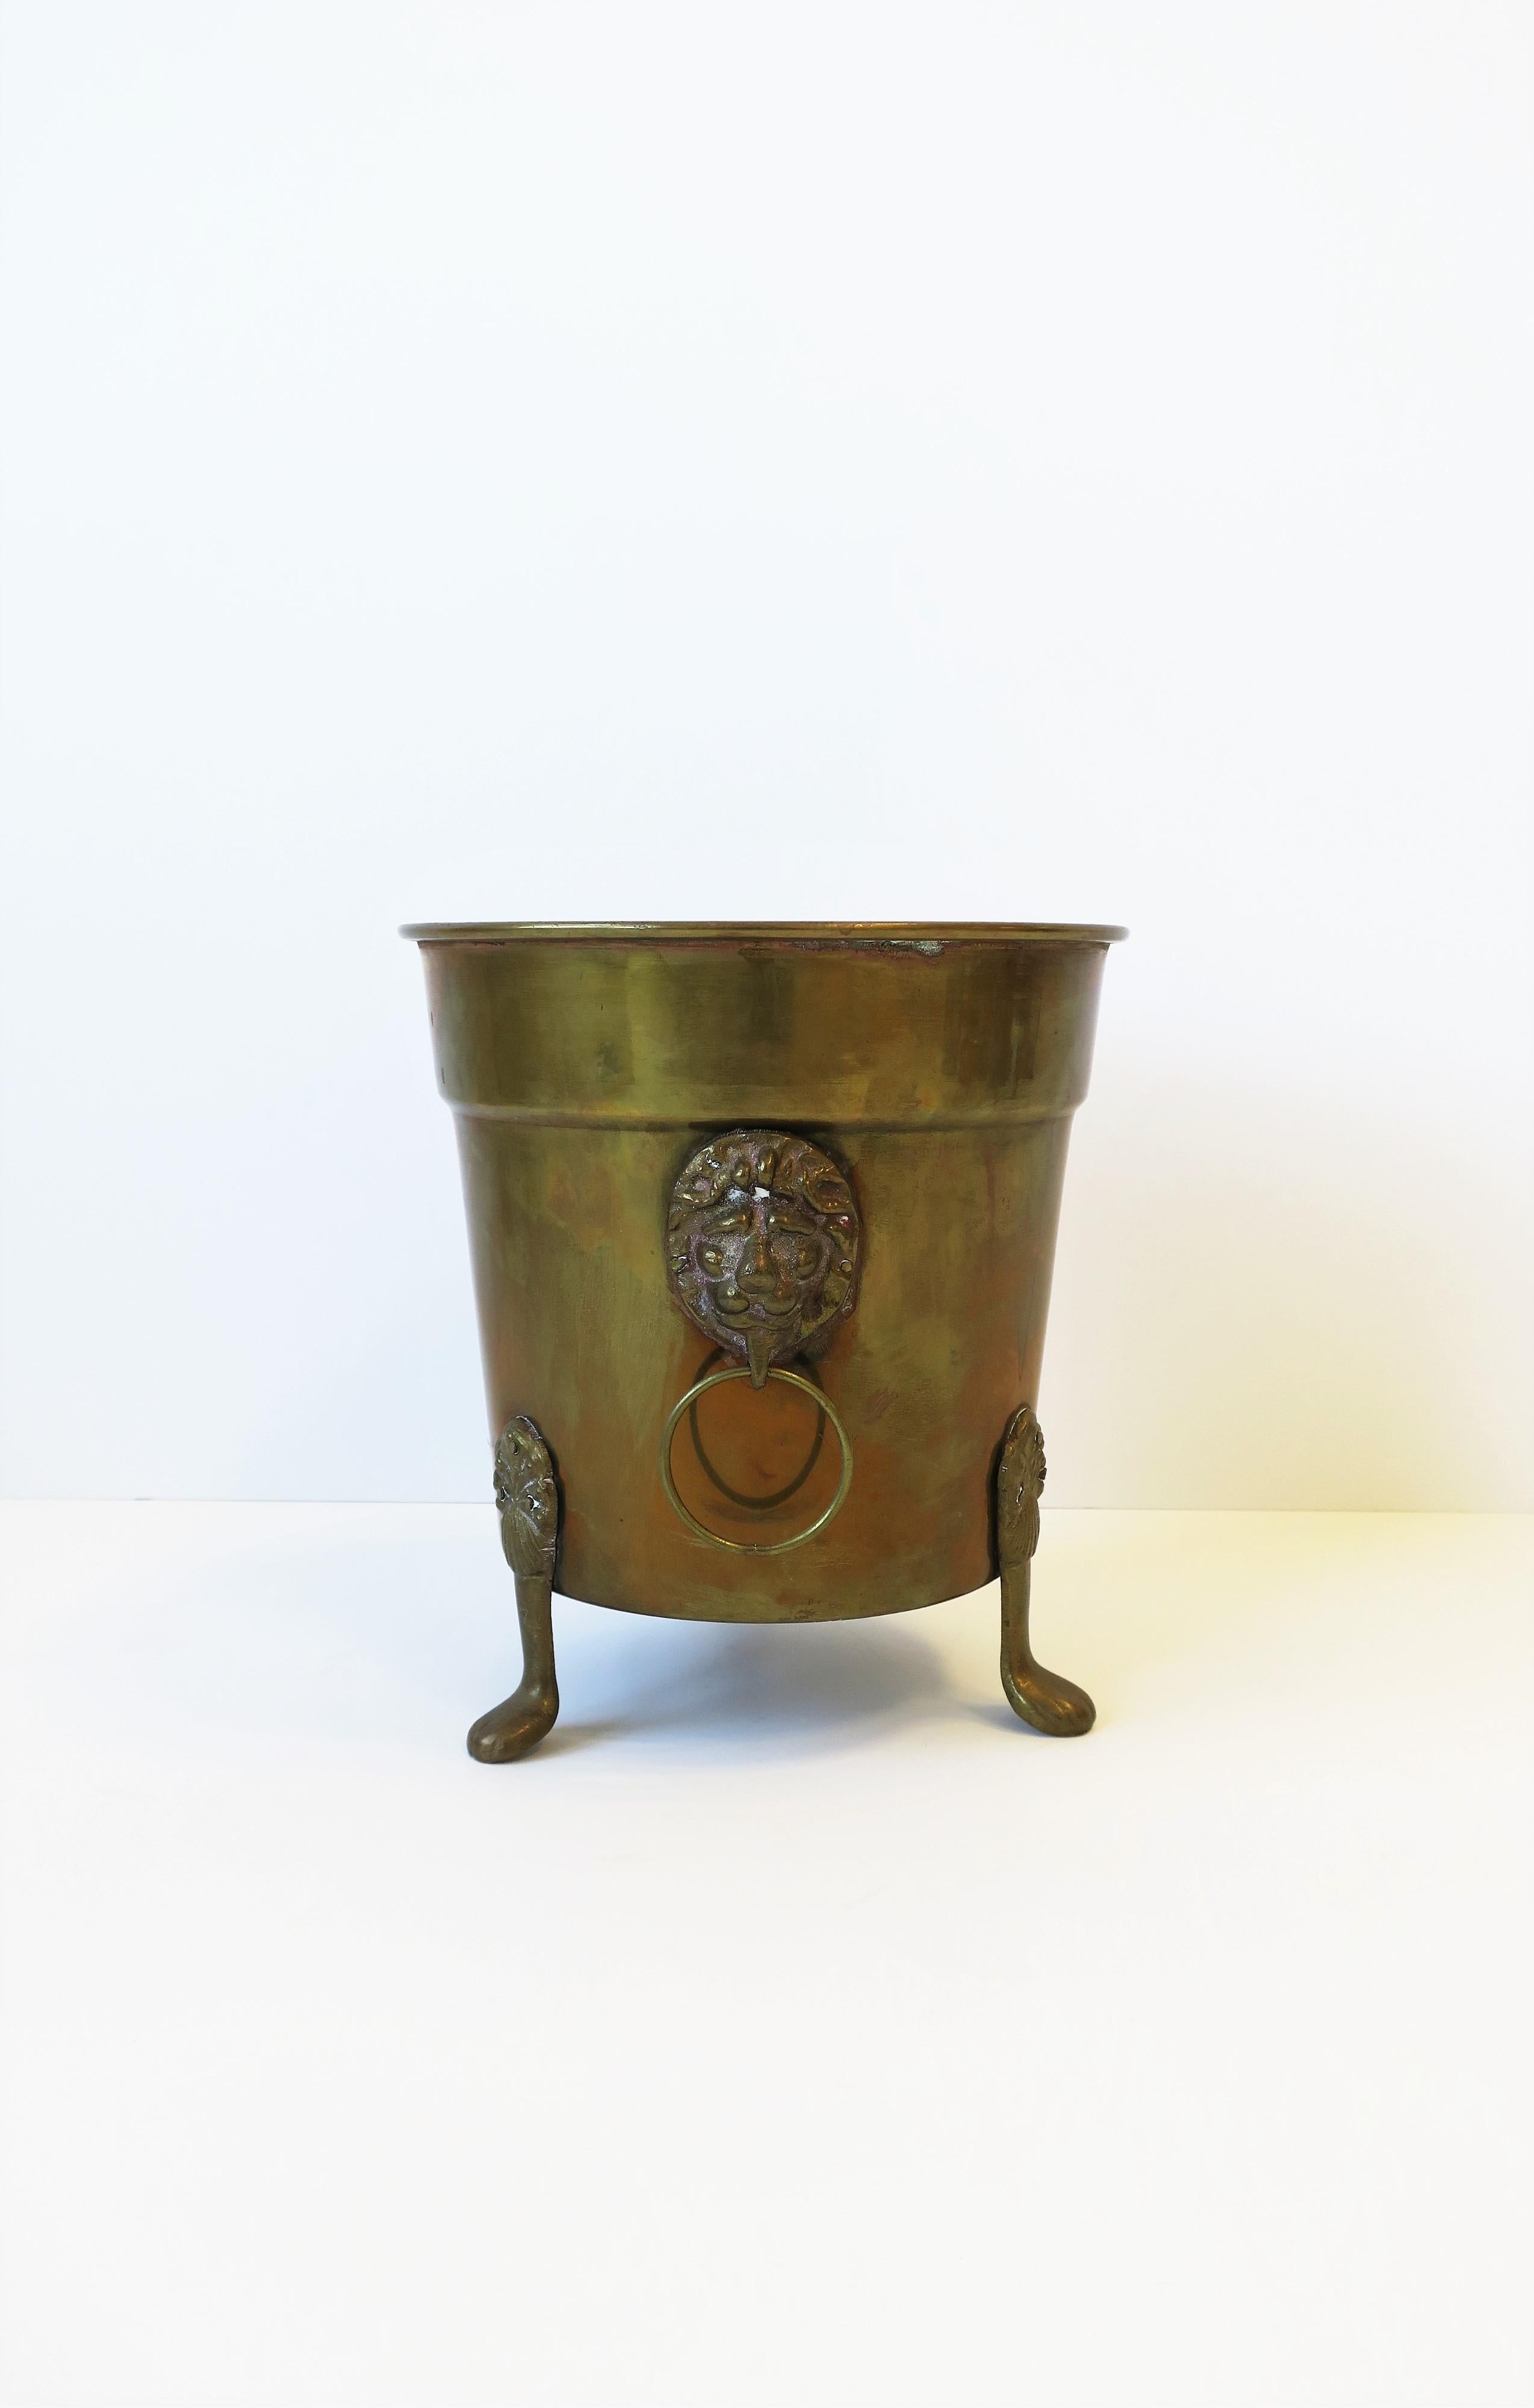 A vintage brass plant pot holder cachepot jardinière with Lionhead design, circa late-20th century. Dimensions: 8.5